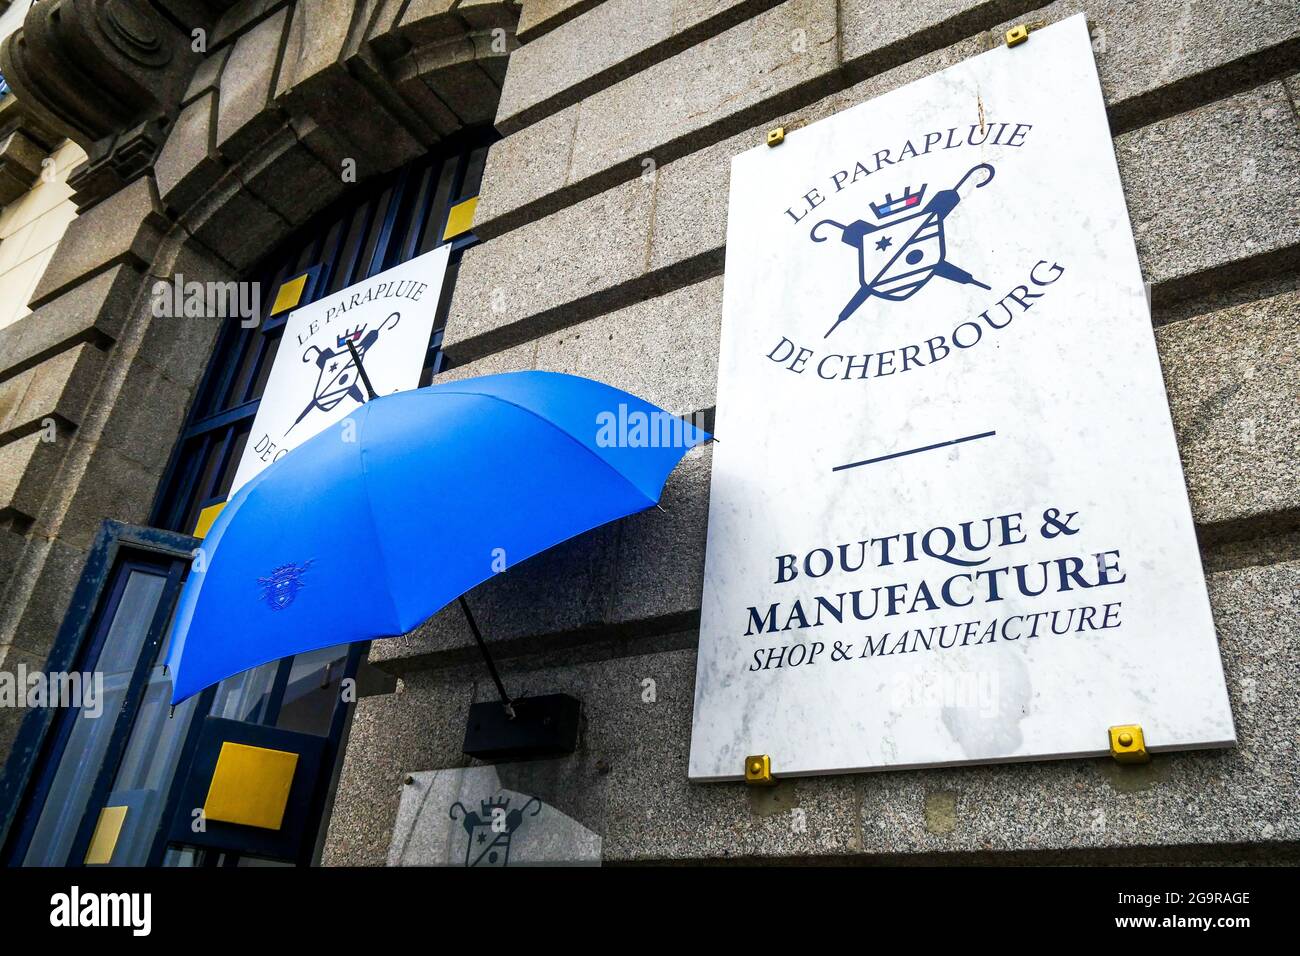 Les Parapluies de Cherbourg manufacture, Cherbourg, Manche department,  Cotentin, Normandy, France Stock Photo - Alamy